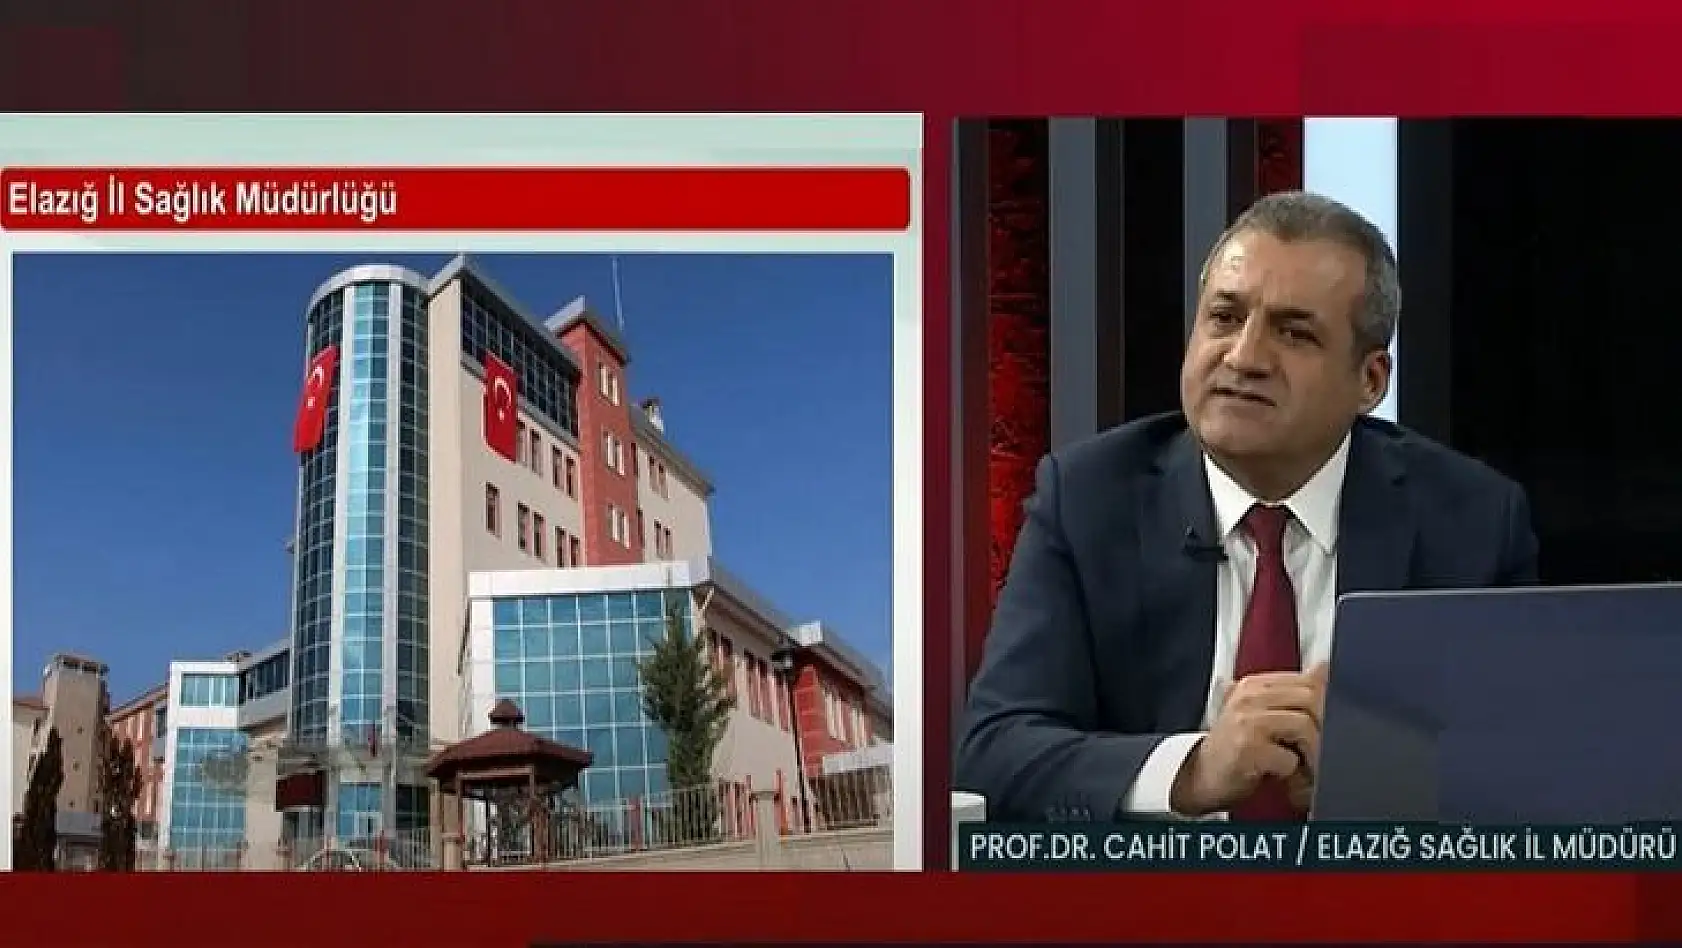 Elazığ'da Vaka Sayılarının Artması Üzerine, İl Sağlık Müdürü Prof. Dr. Cahit Polat Vatandaşları Uyardı